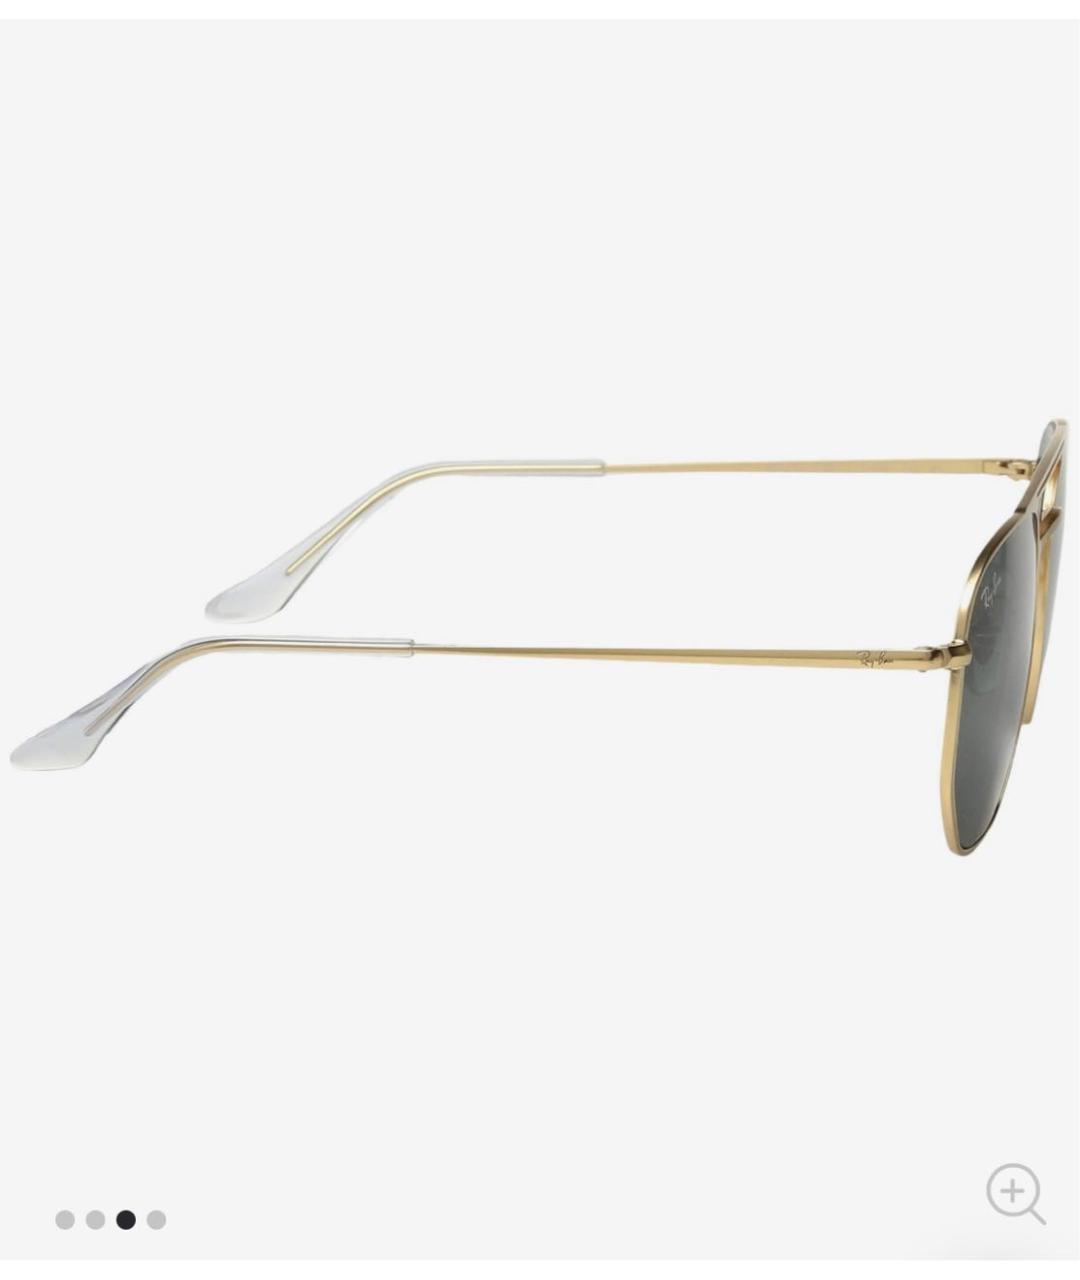 RAY BAN Золотые металлические солнцезащитные очки, фото 2